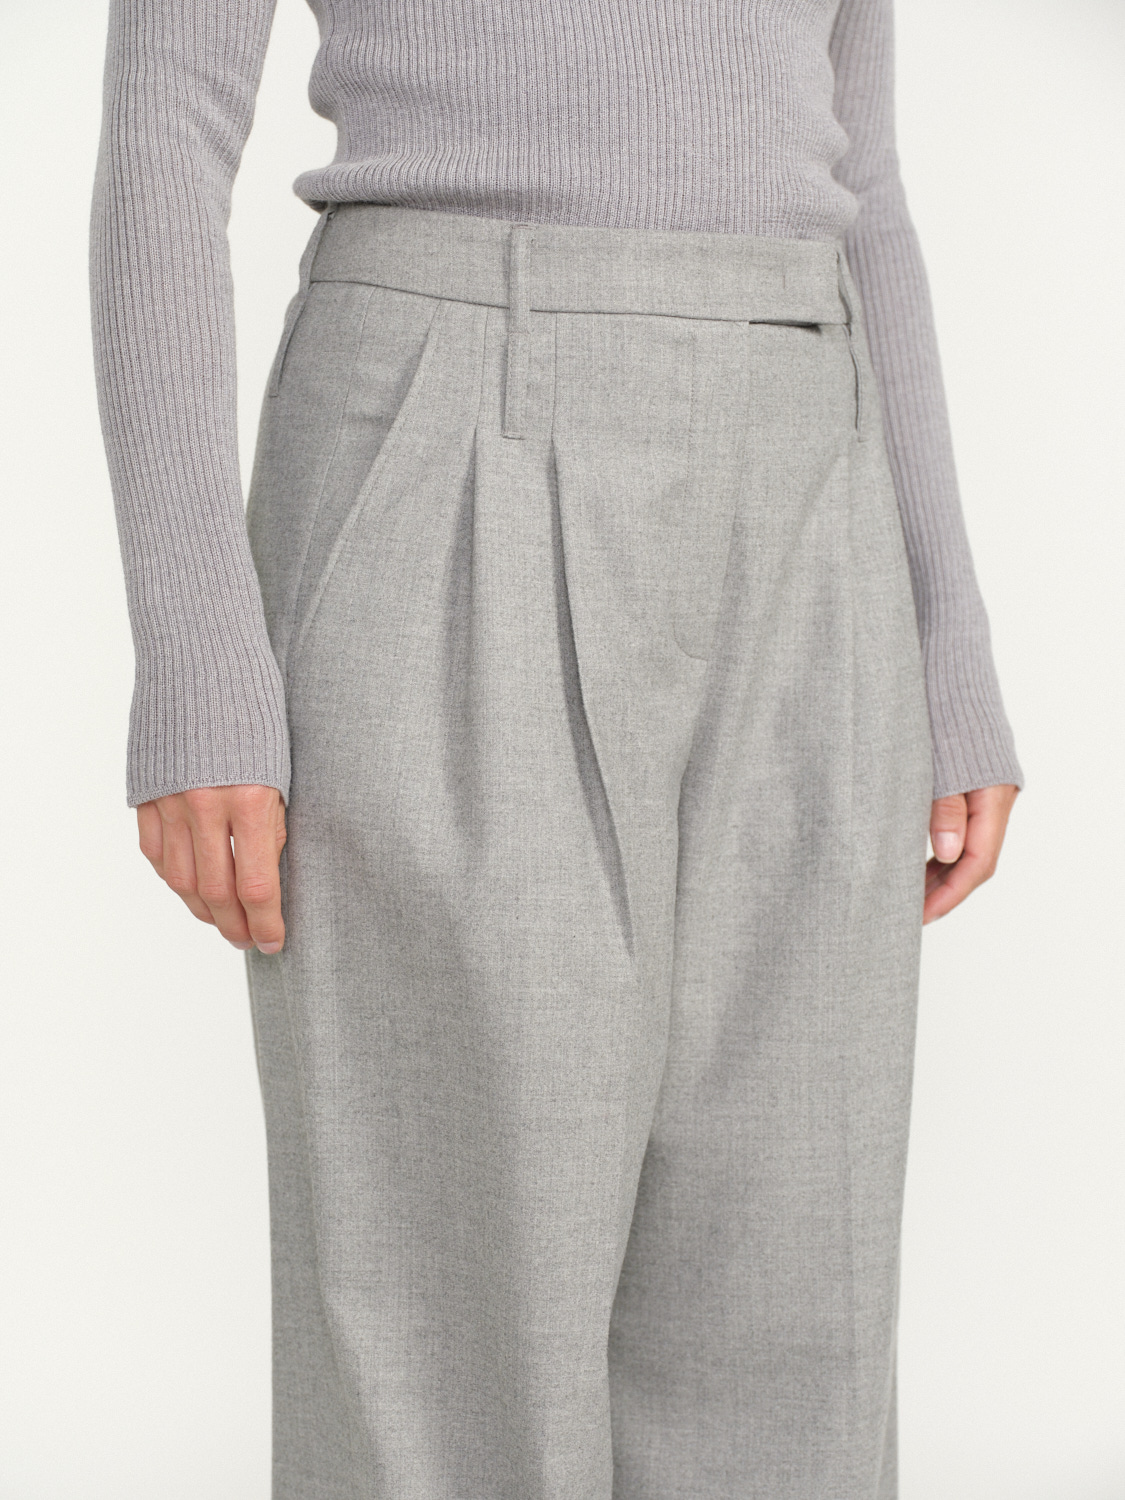 Seductive Giselle - Pantalon à pinces en laine grau 34